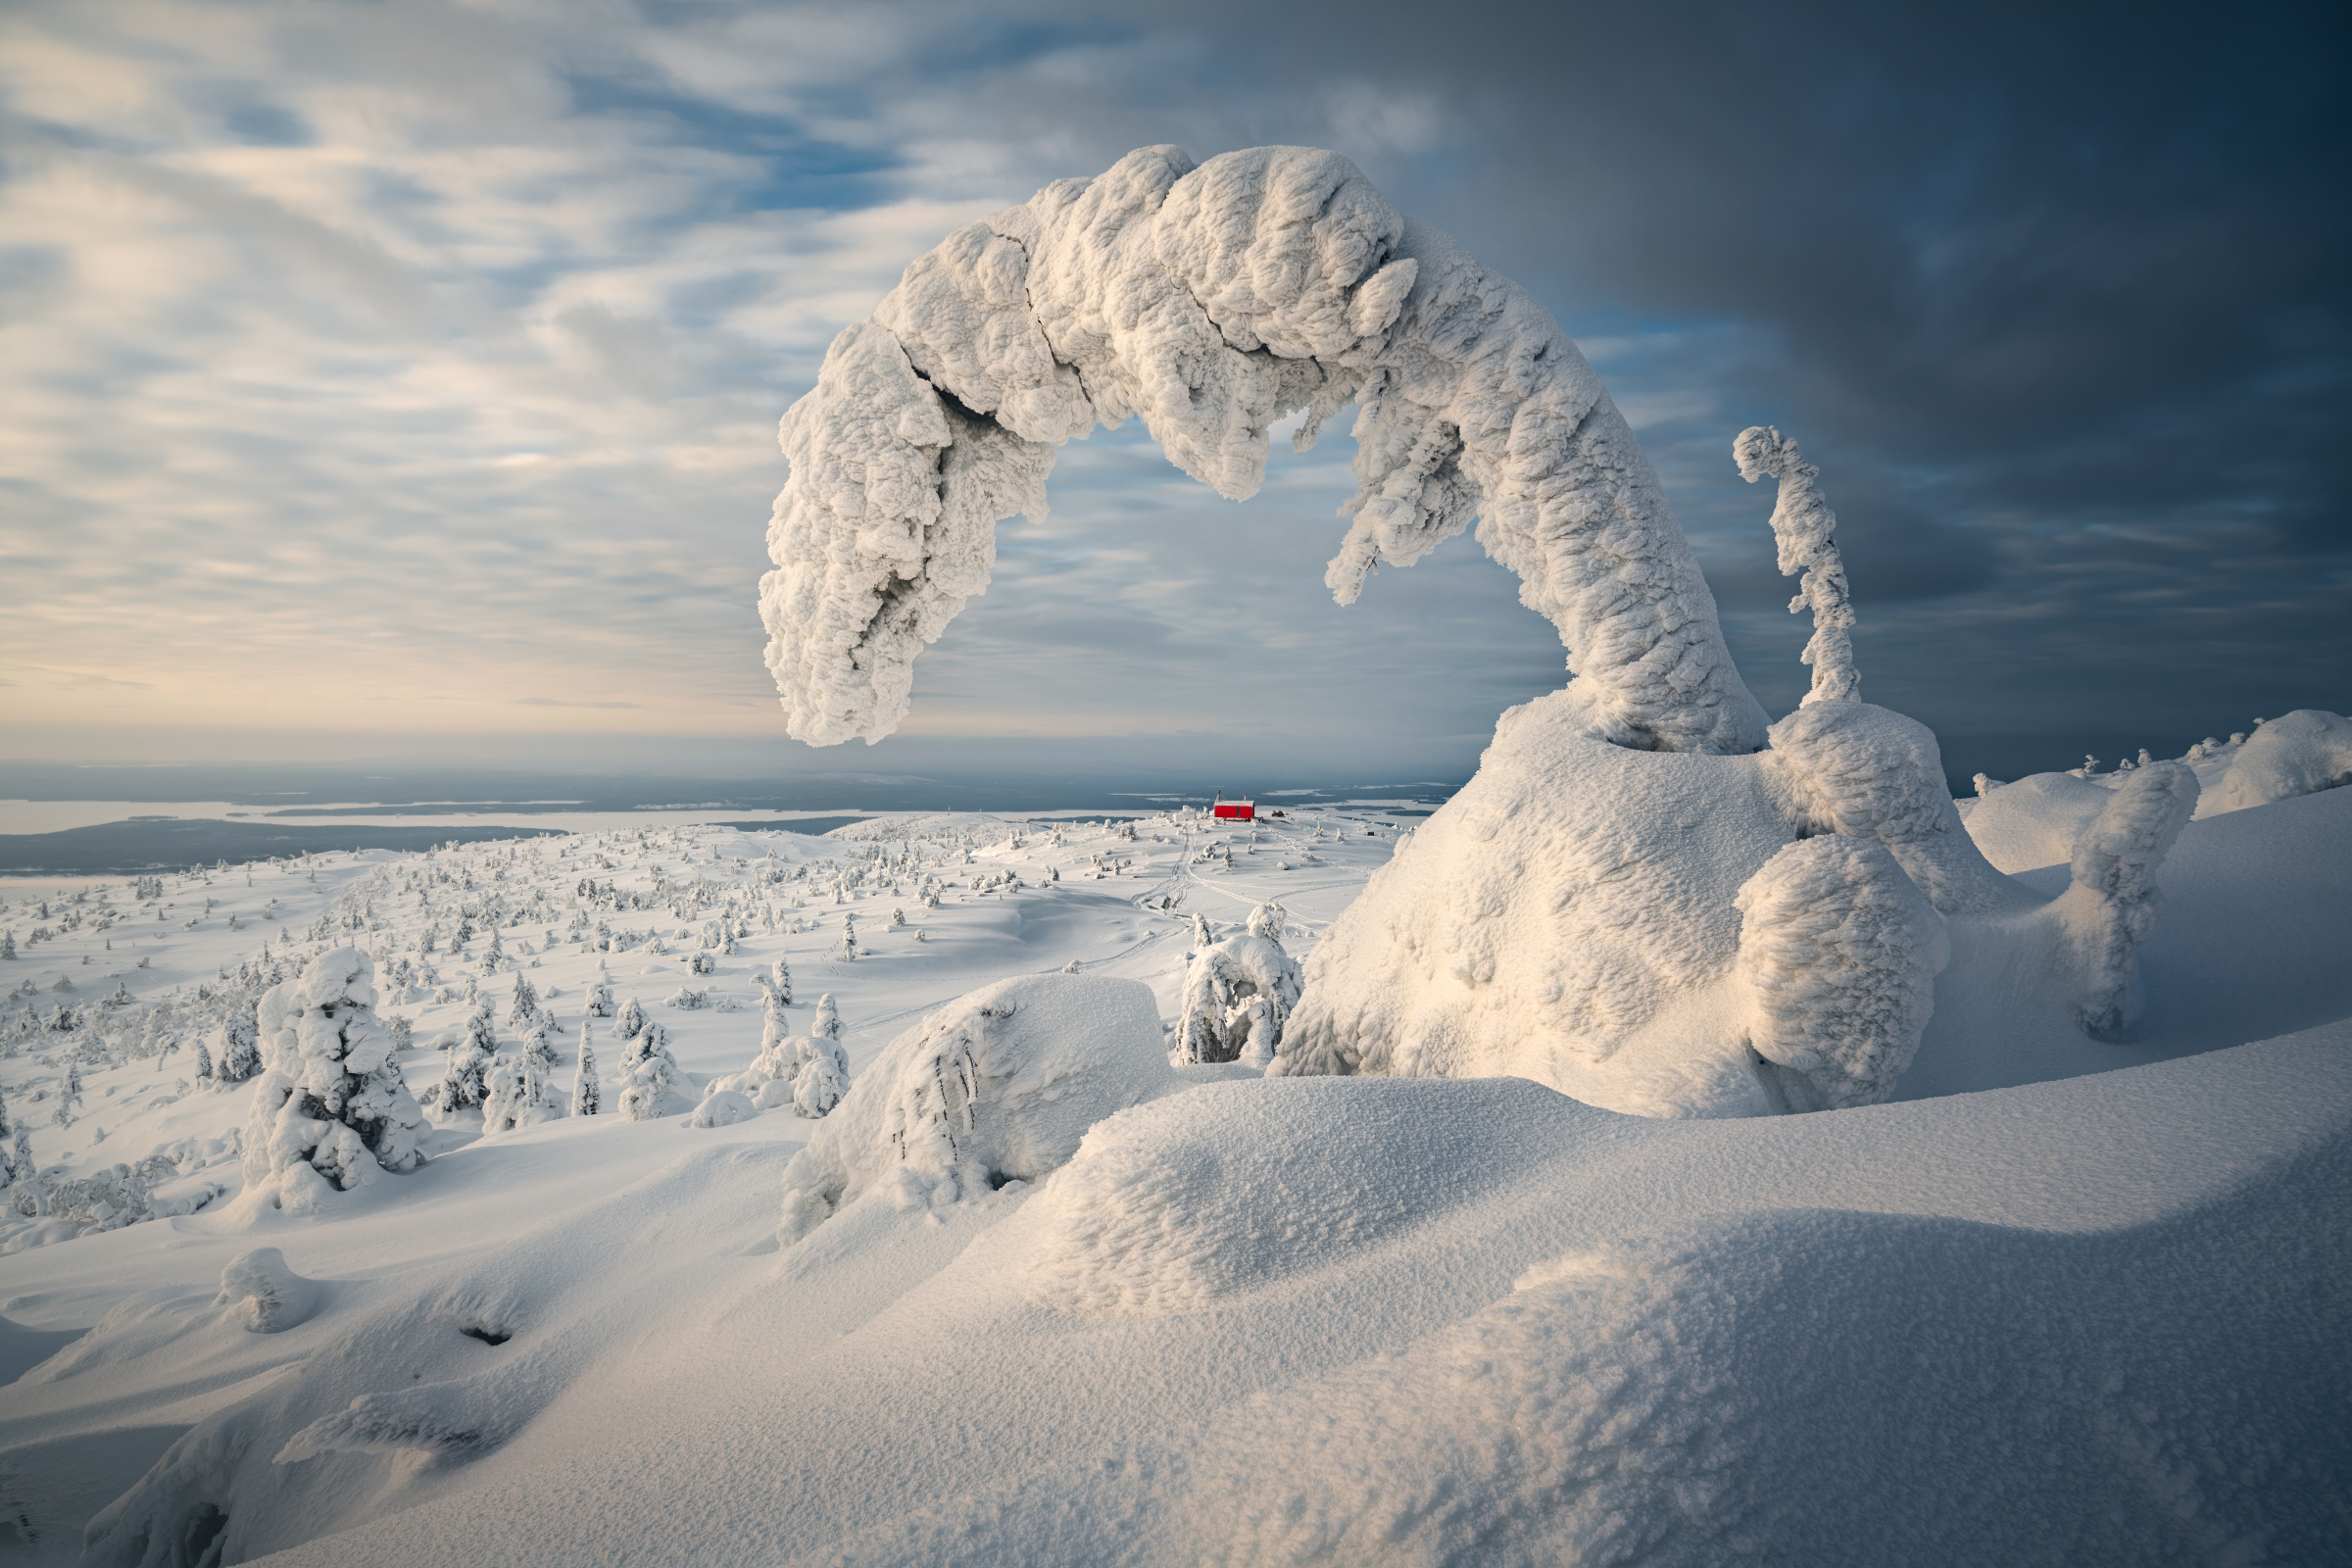 Кольский полуостров славится сказочно-снежными зимами. Фото: Zhu Xiao, участник фотоконкурса РГО 